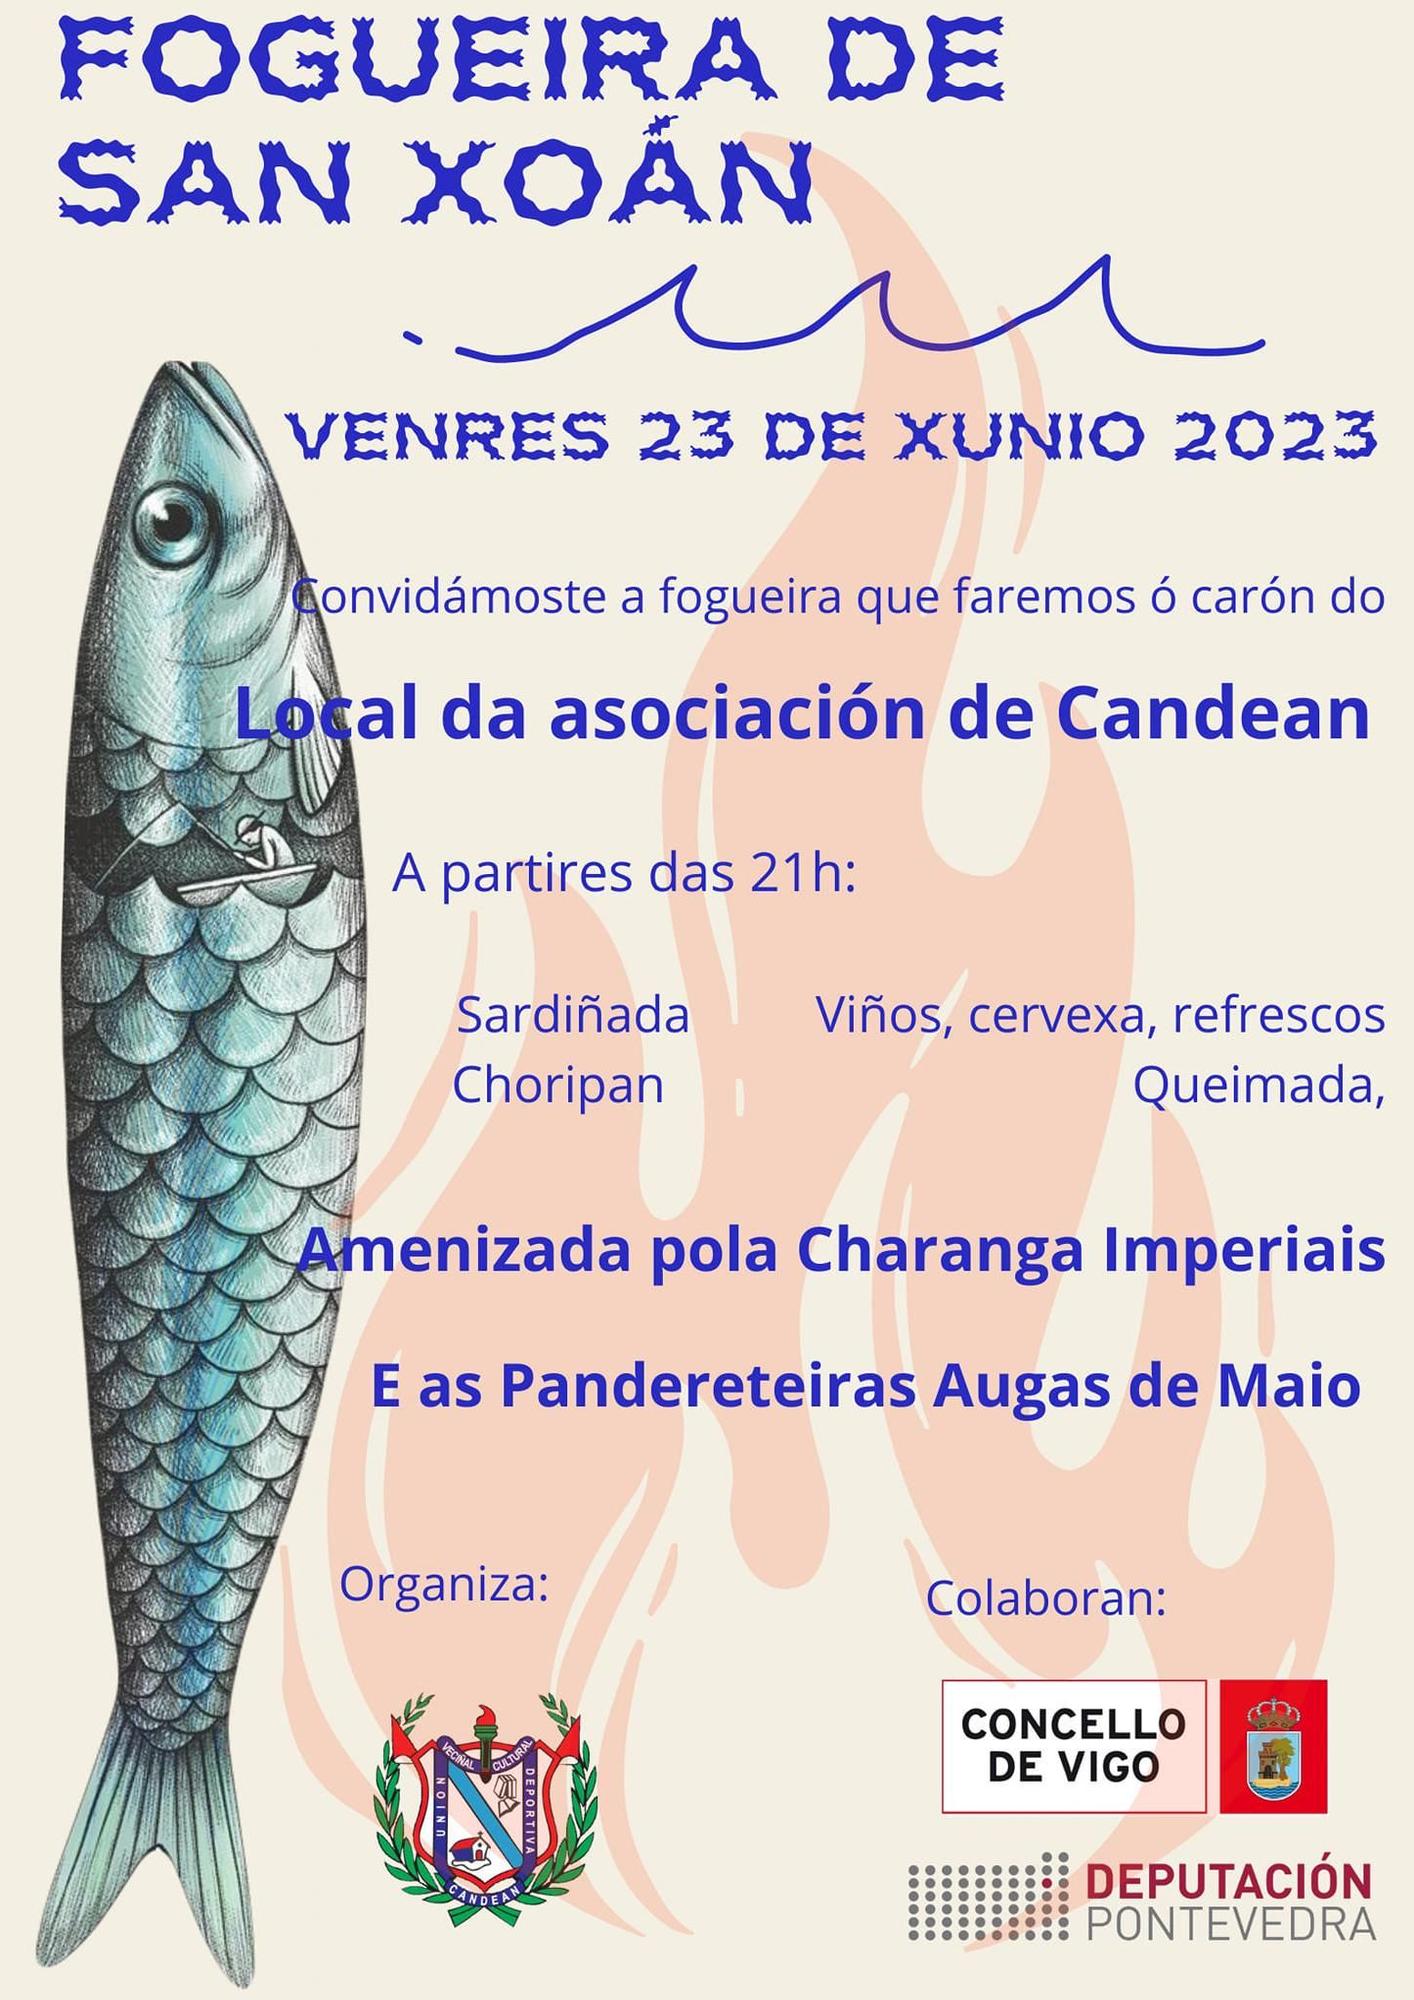 Cartel de la fiesta de San Juan 2023 en Candeán.